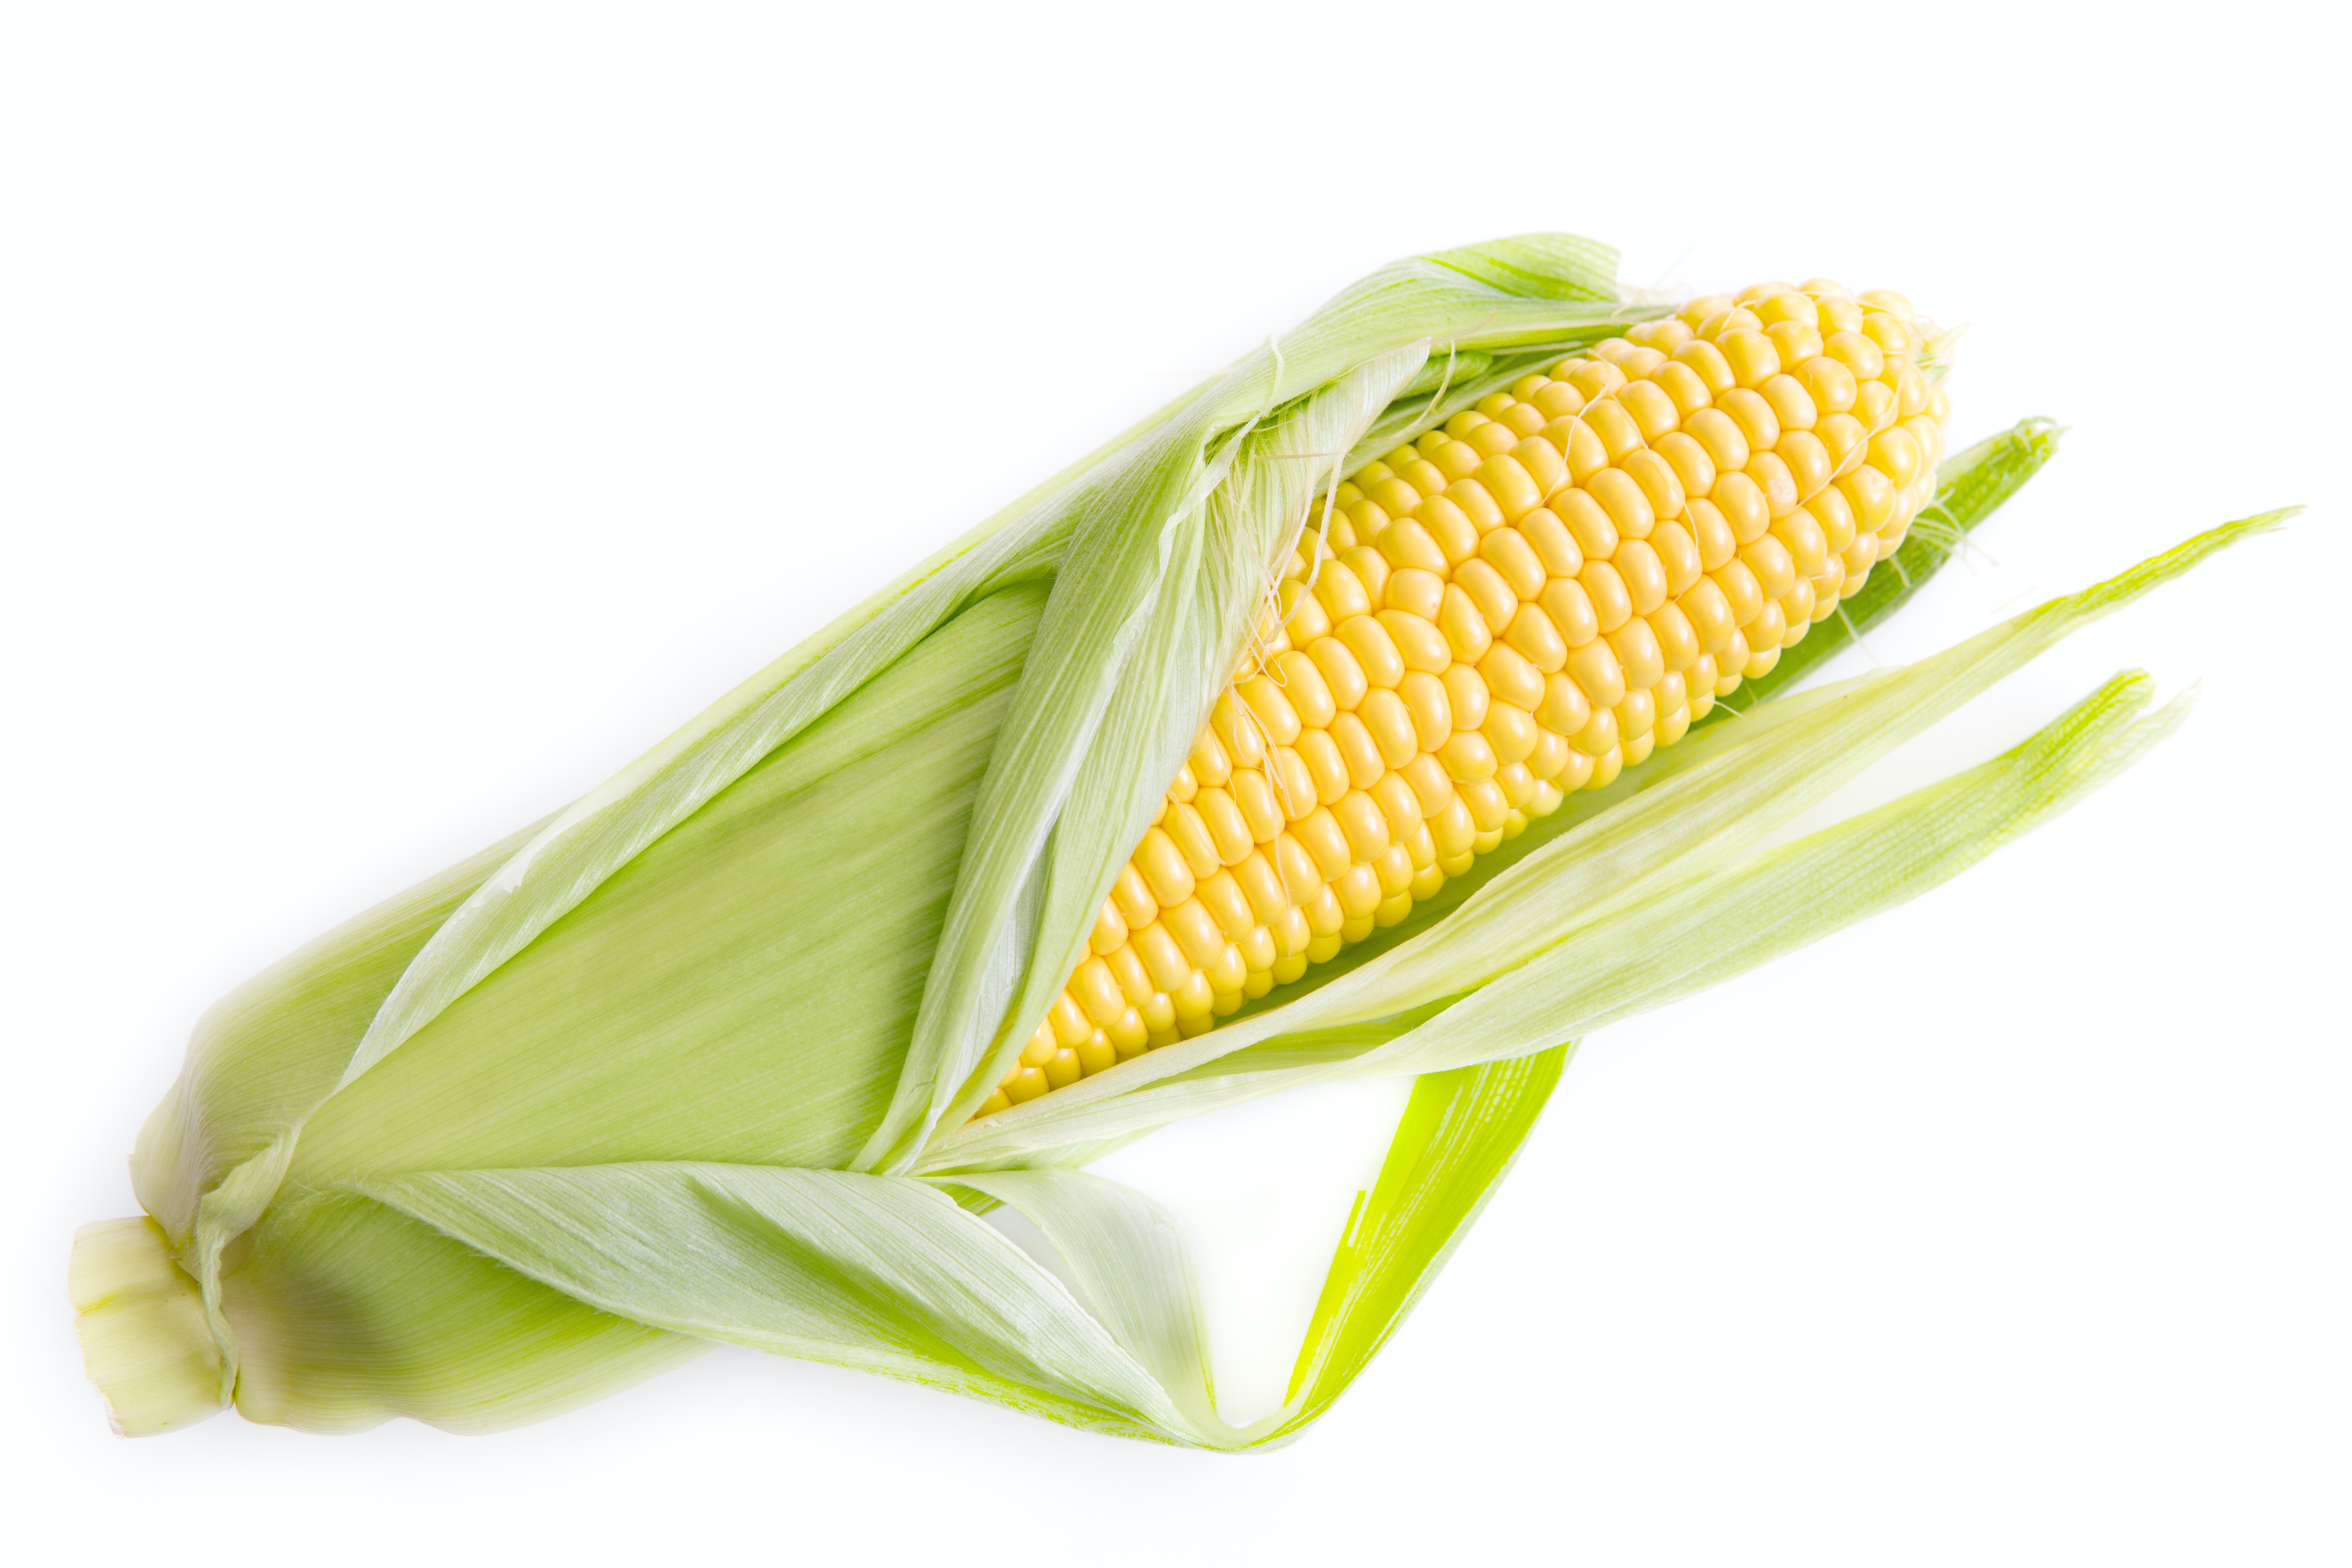 Учёные создали экологичную упаковку из кукурузы